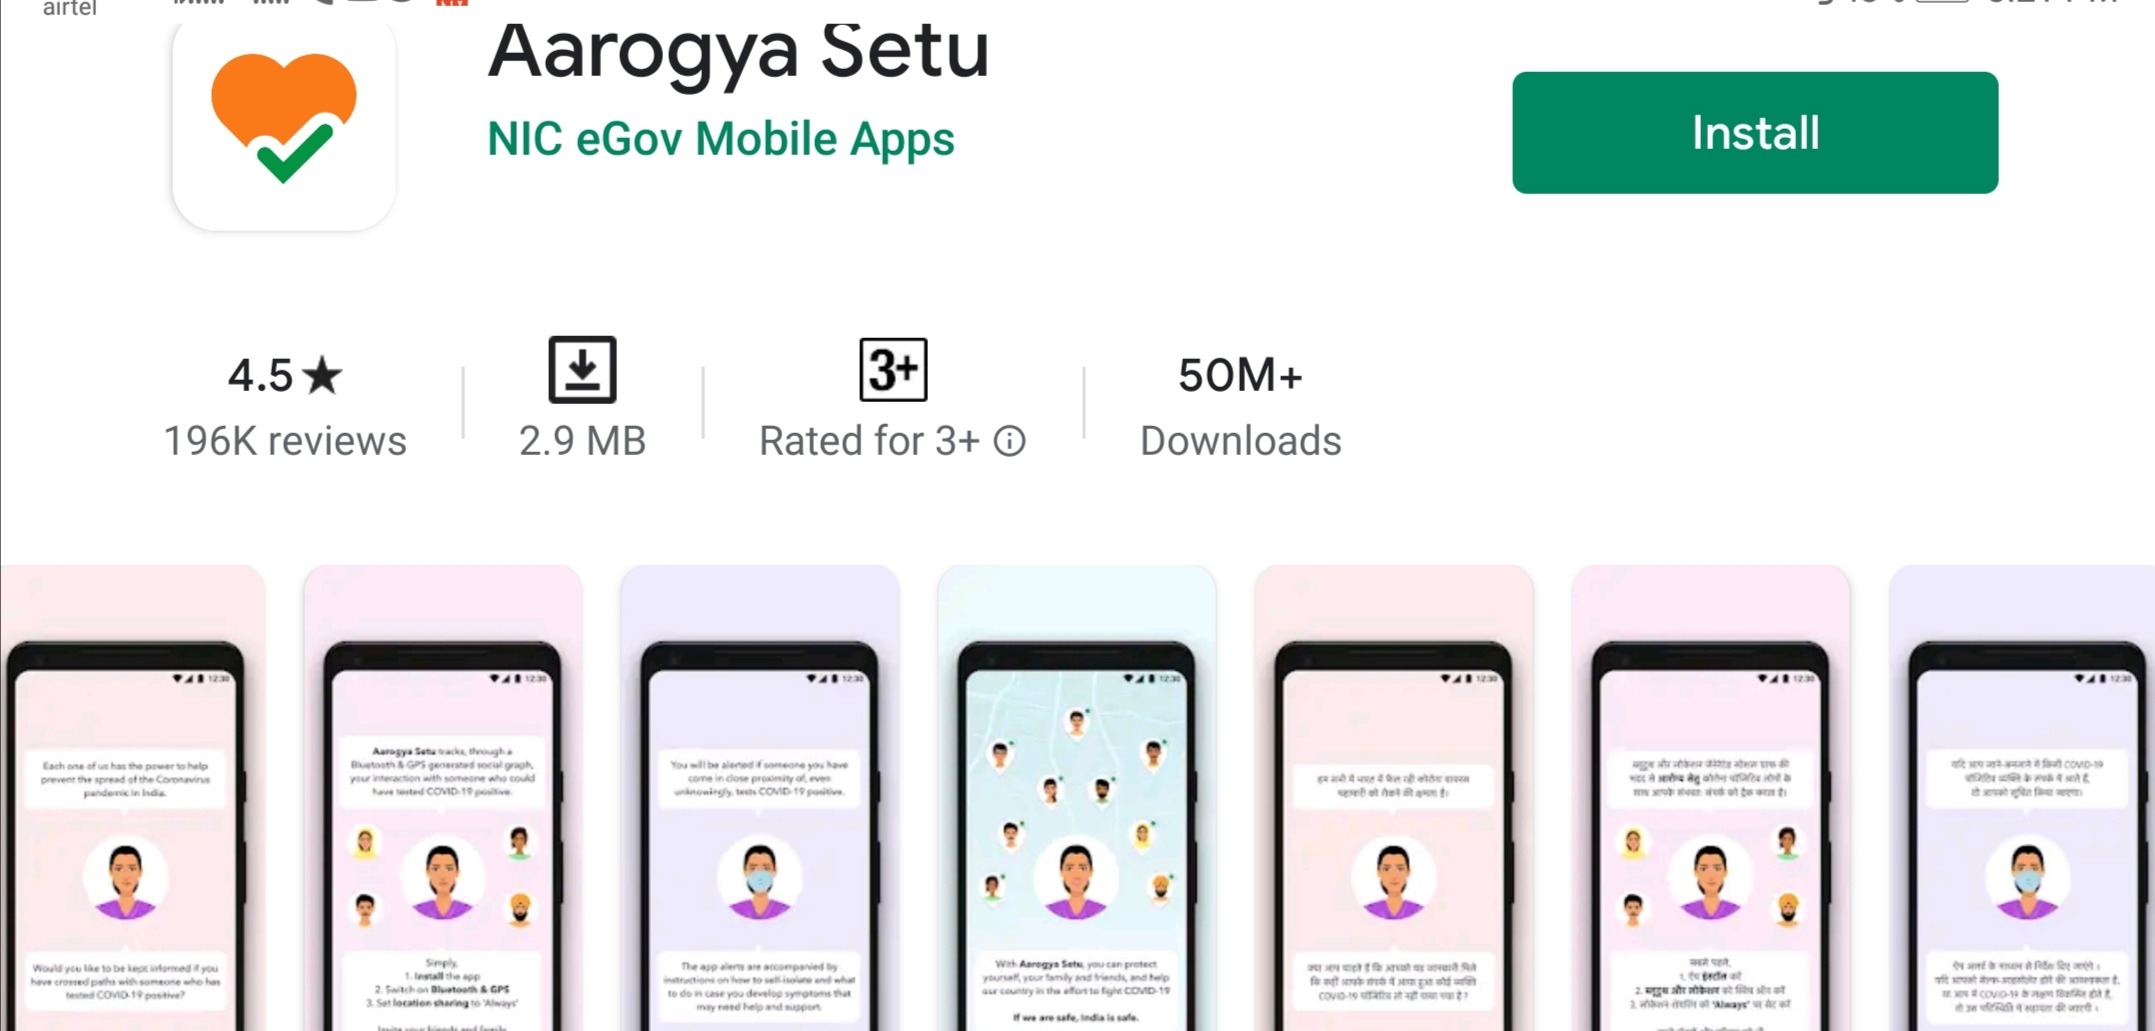 Do You Know About Arogya Setu App